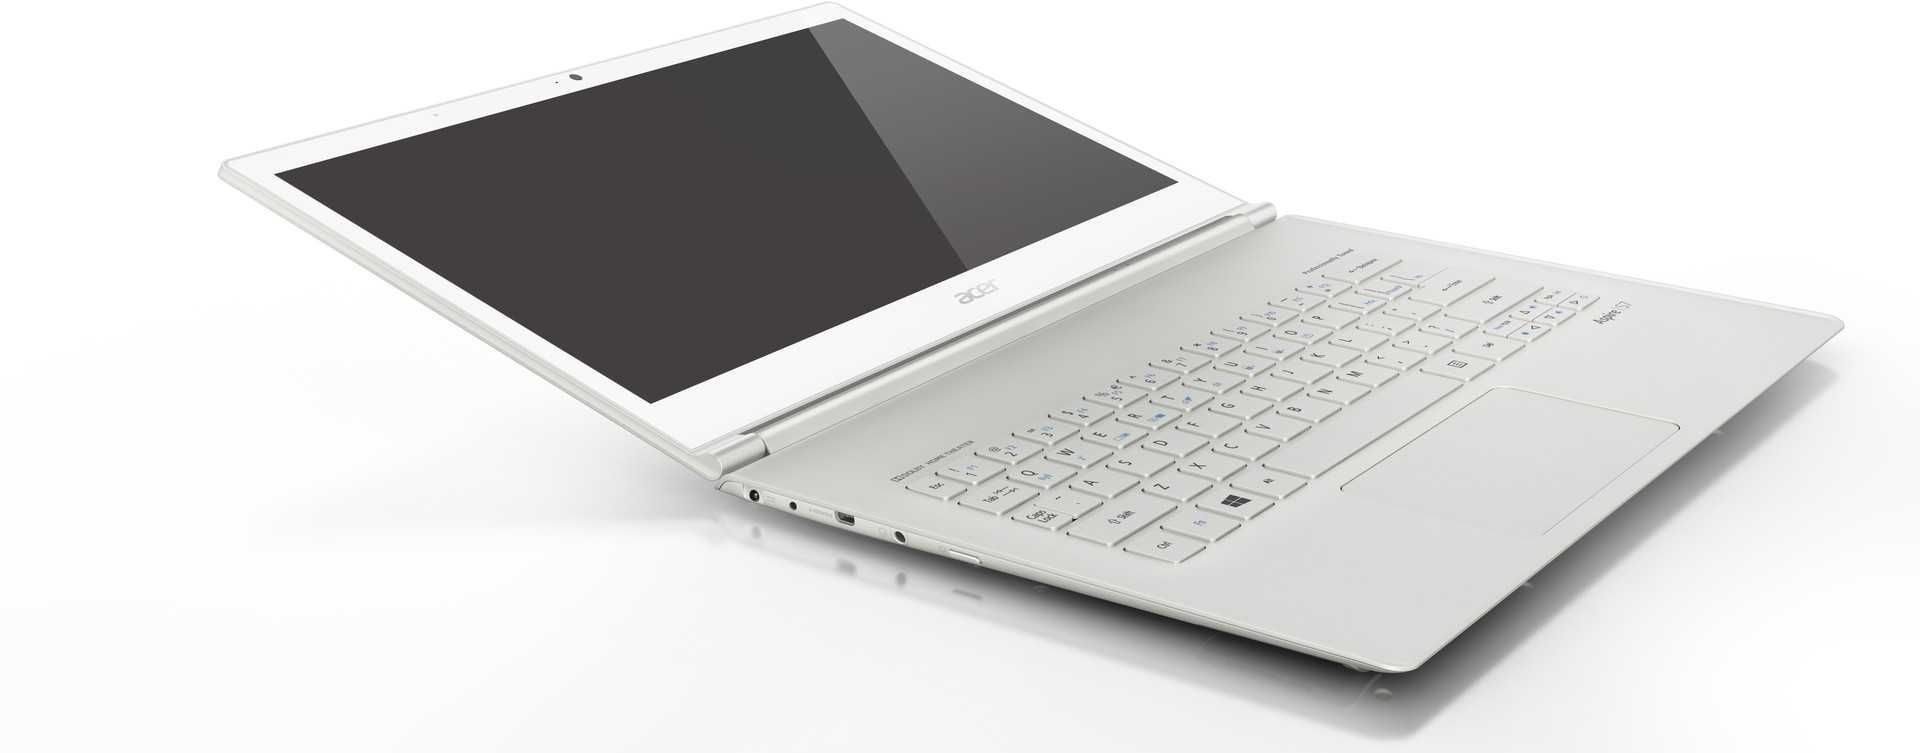 Ноутбук-планшет acer aspire s7 391-73534g25aws — купить в городе люберцы